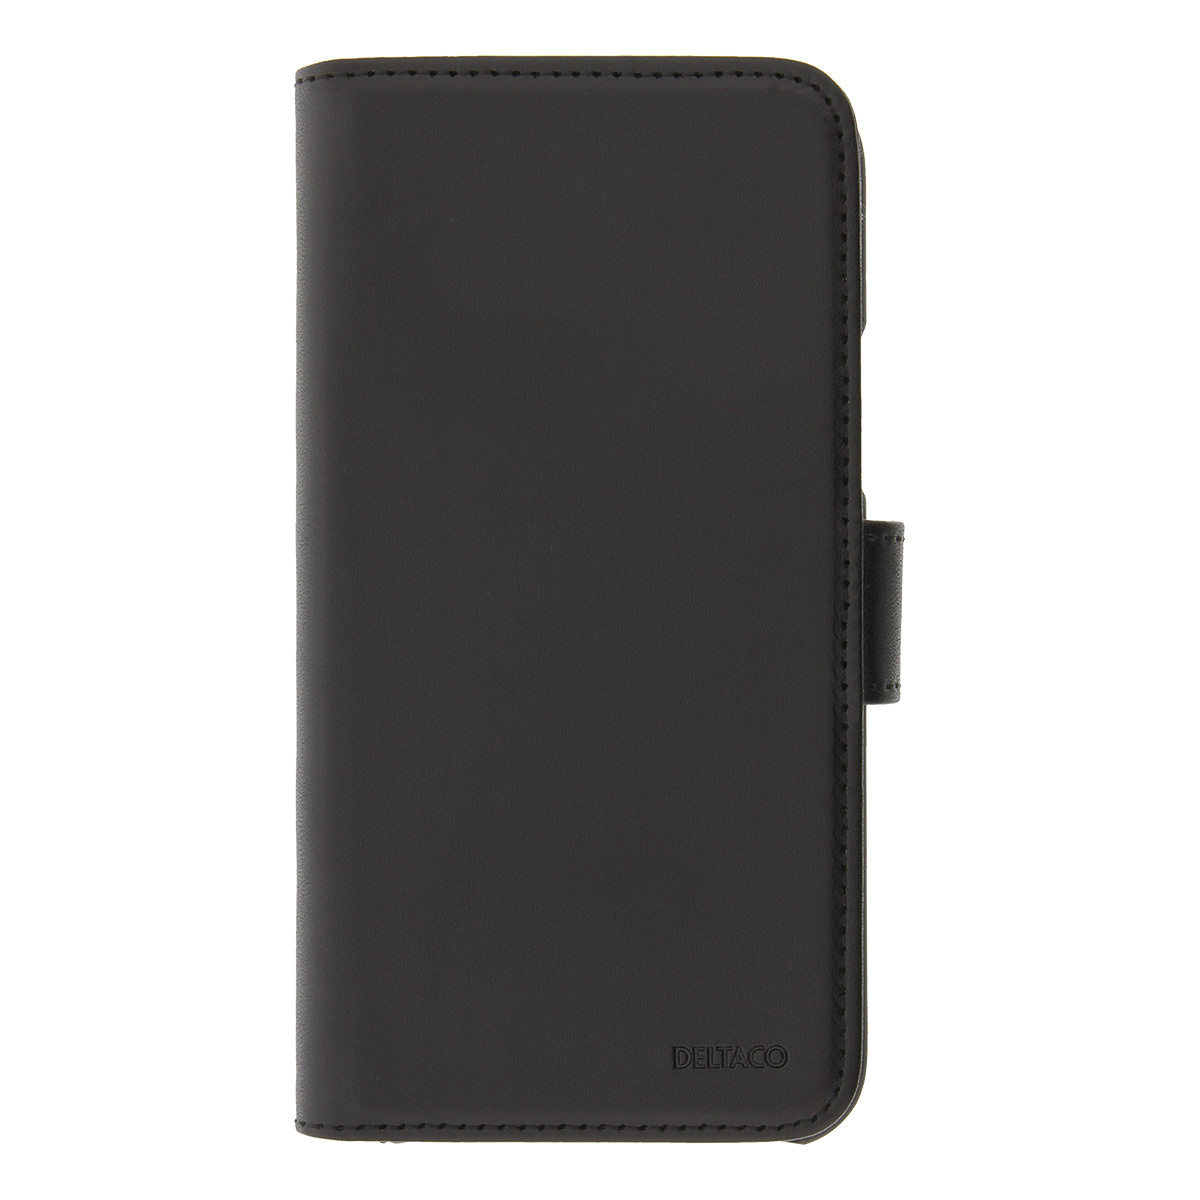 DELTACO plånboksfodral med löstagbar baksida till iPhone 11 Pro